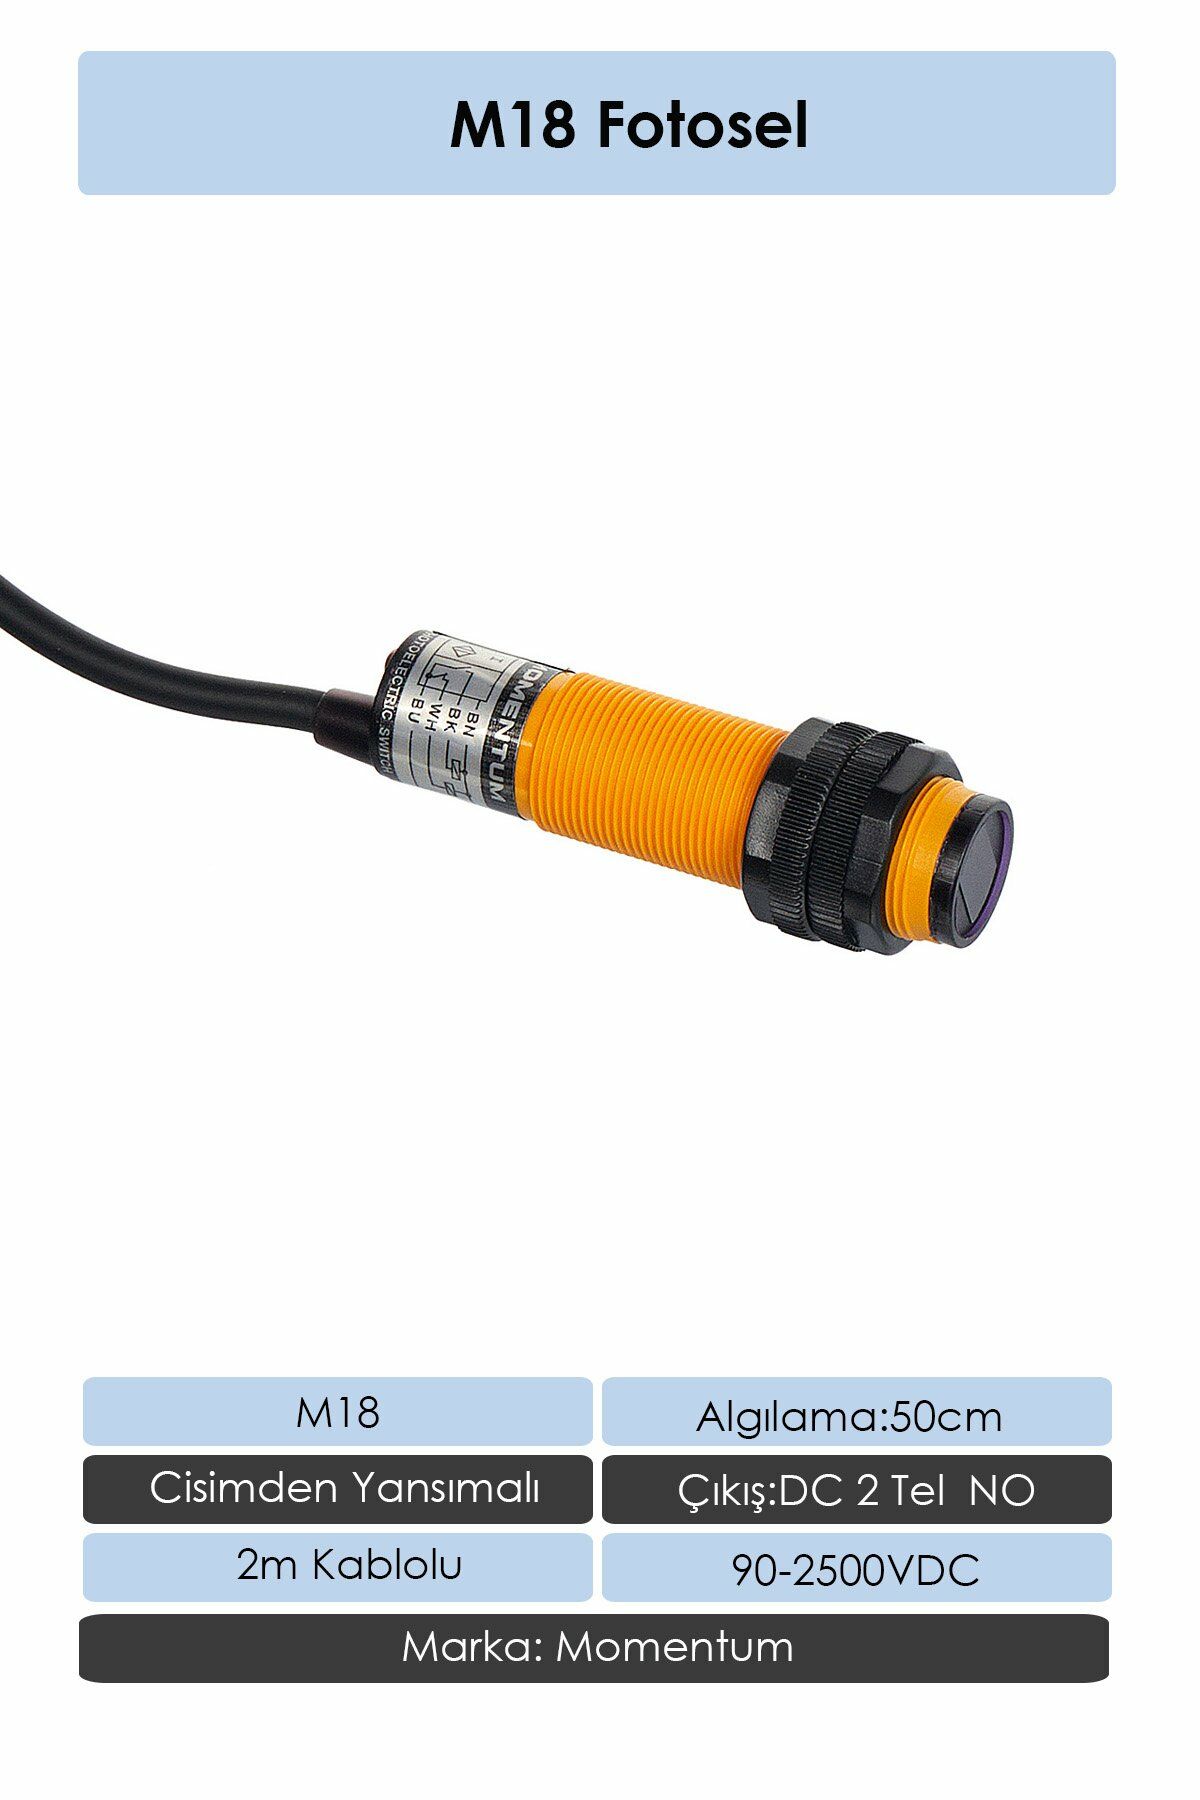 Momentum Fotosel M18 50cm Cisimden 2m Kablo AC 2 Tel NO G18-2A50A